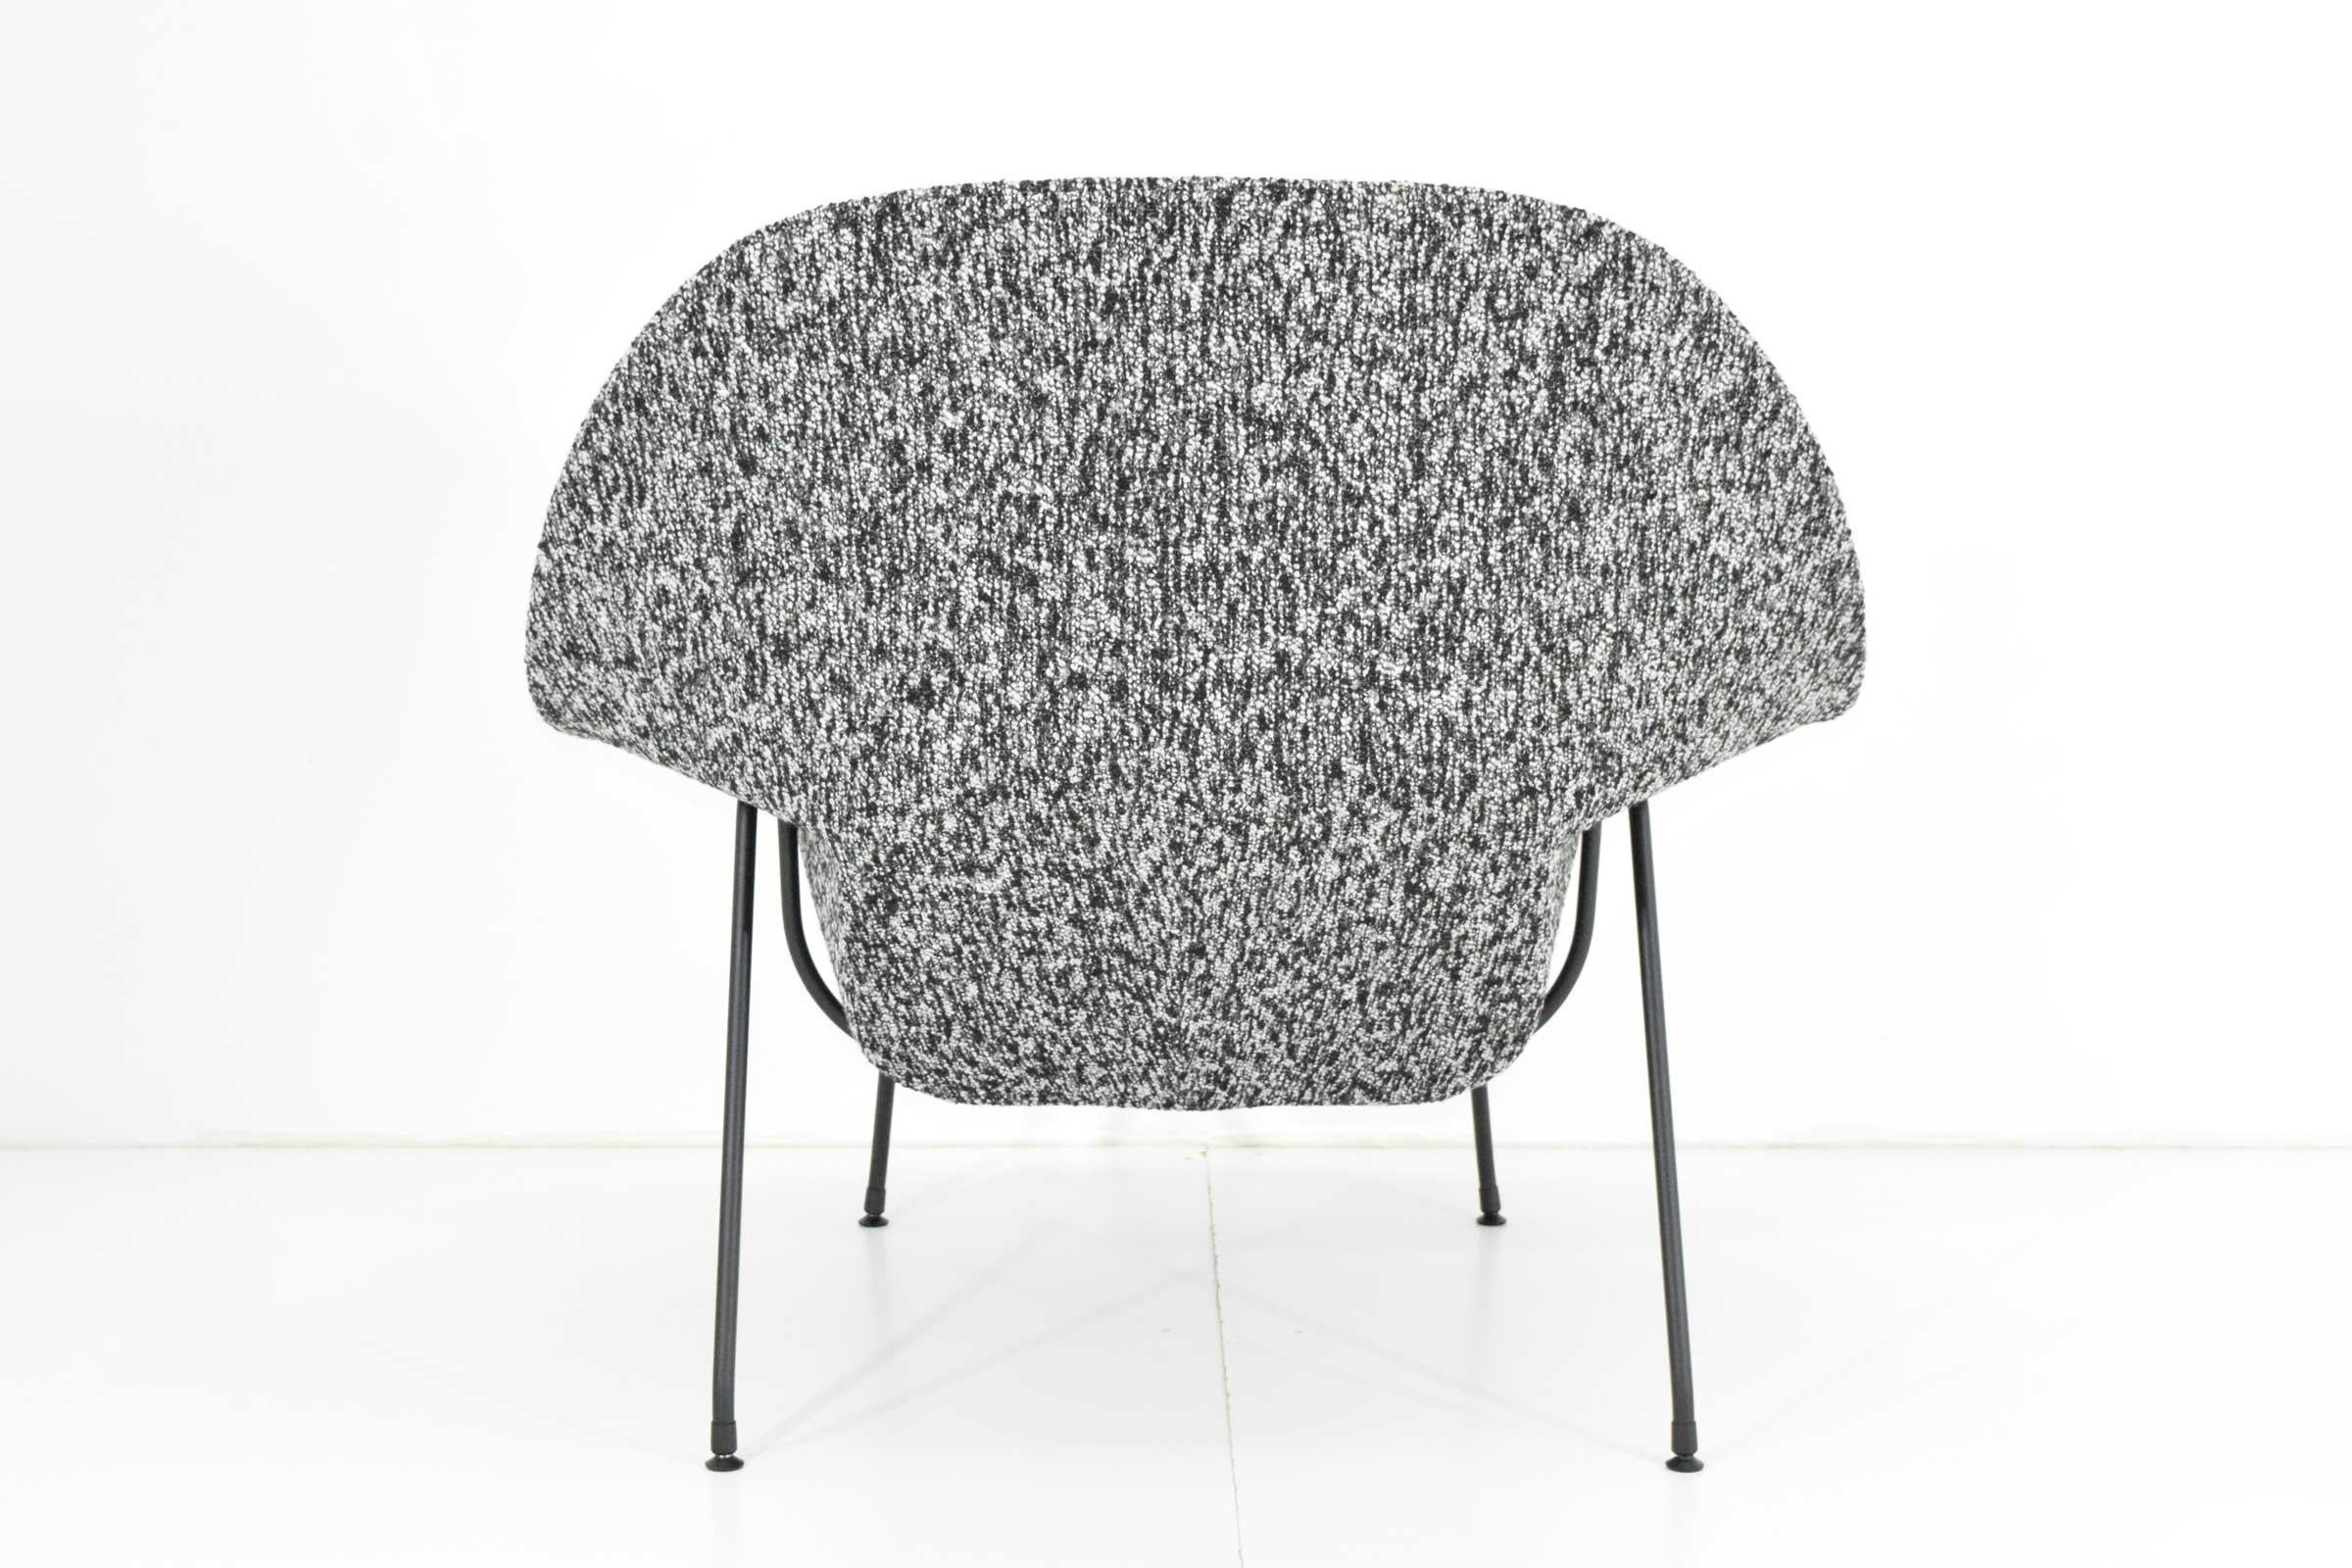 Metal Eero Saarinen for Knoll Womb Chair and Ottoman